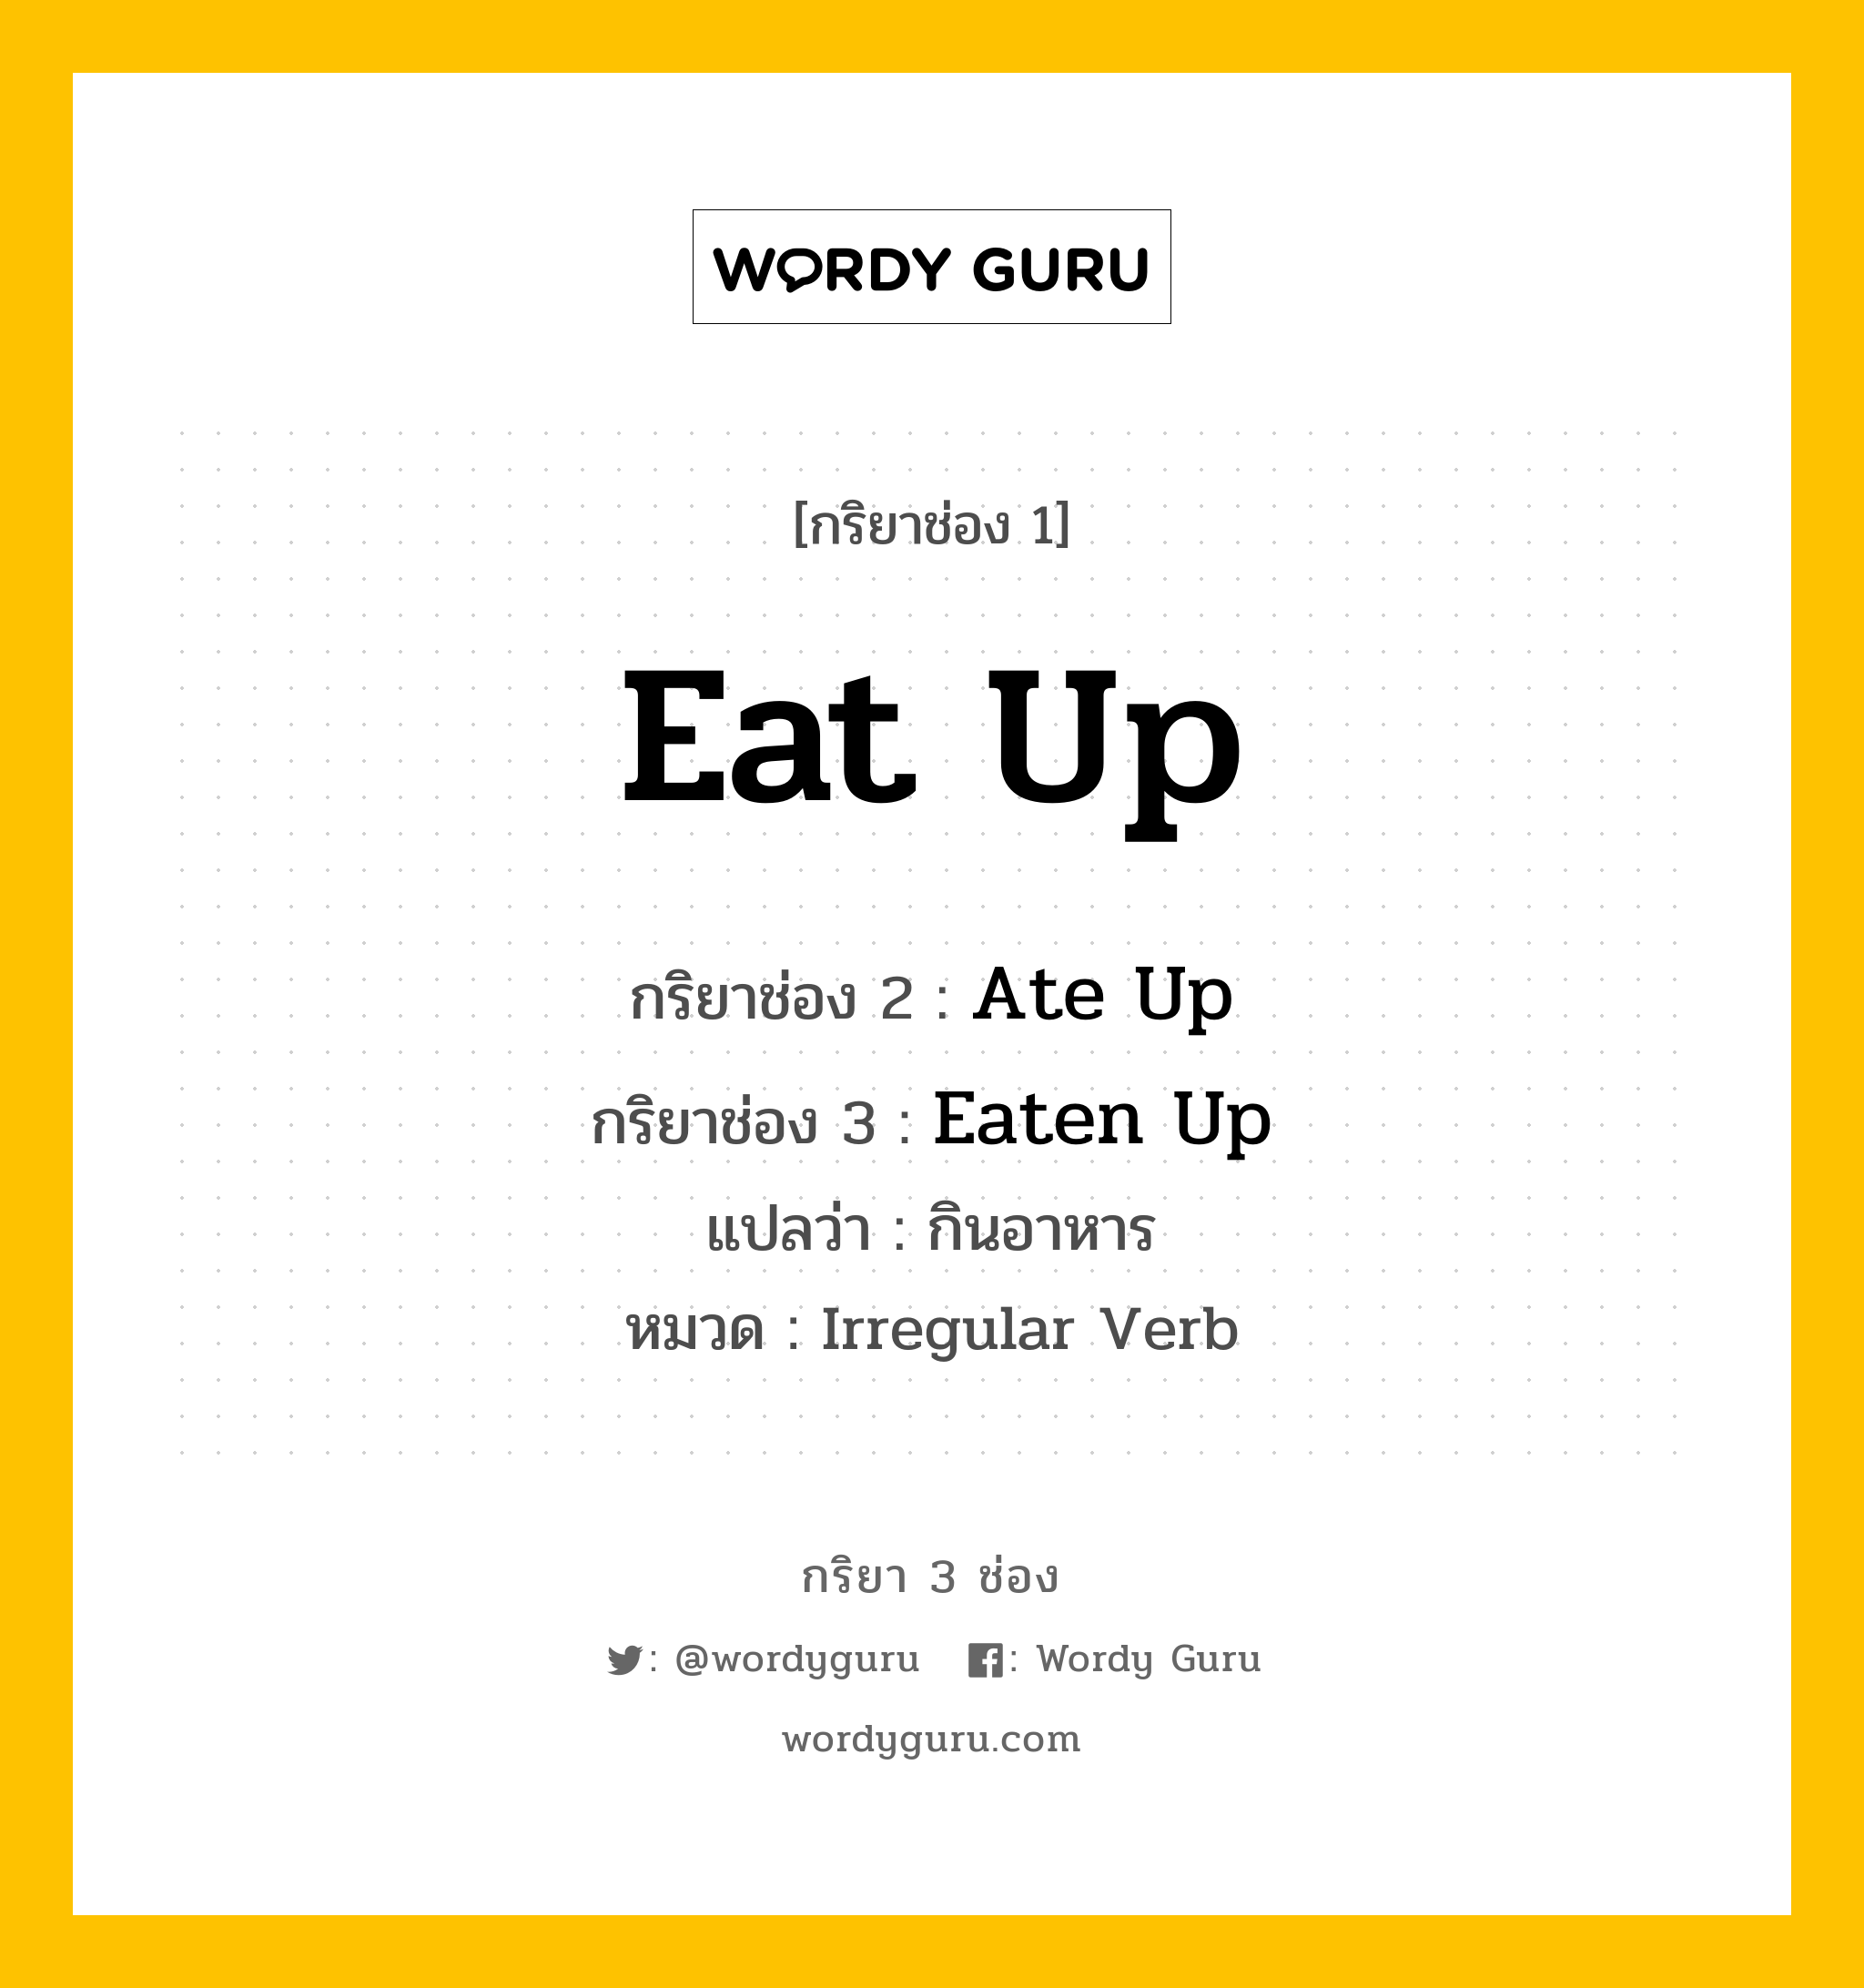 กริยา 3 ช่อง: Eat Up ช่อง 2 Eat Up ช่อง 3 คืออะไร, กริยาช่อง 1 Eat Up กริยาช่อง 2 Ate Up กริยาช่อง 3 Eaten Up แปลว่า กินอาหาร หมวด Irregular Verb หมวด Irregular Verb